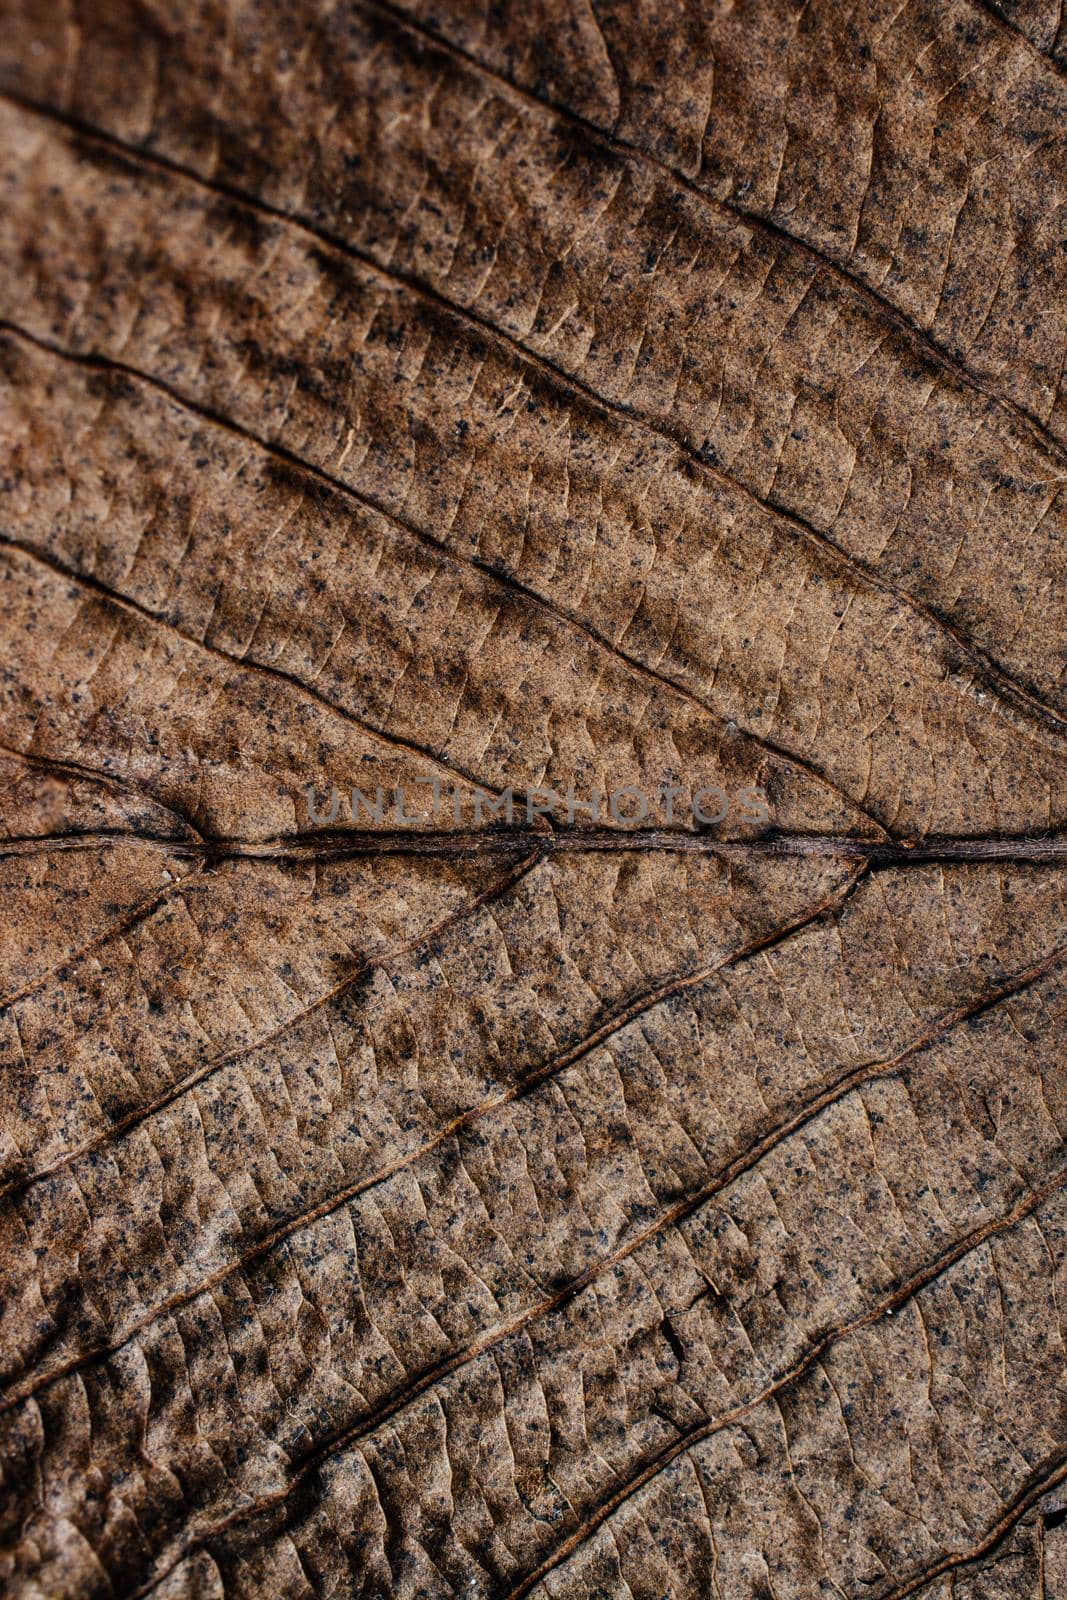 Macro view of dry leaf texture by berkay